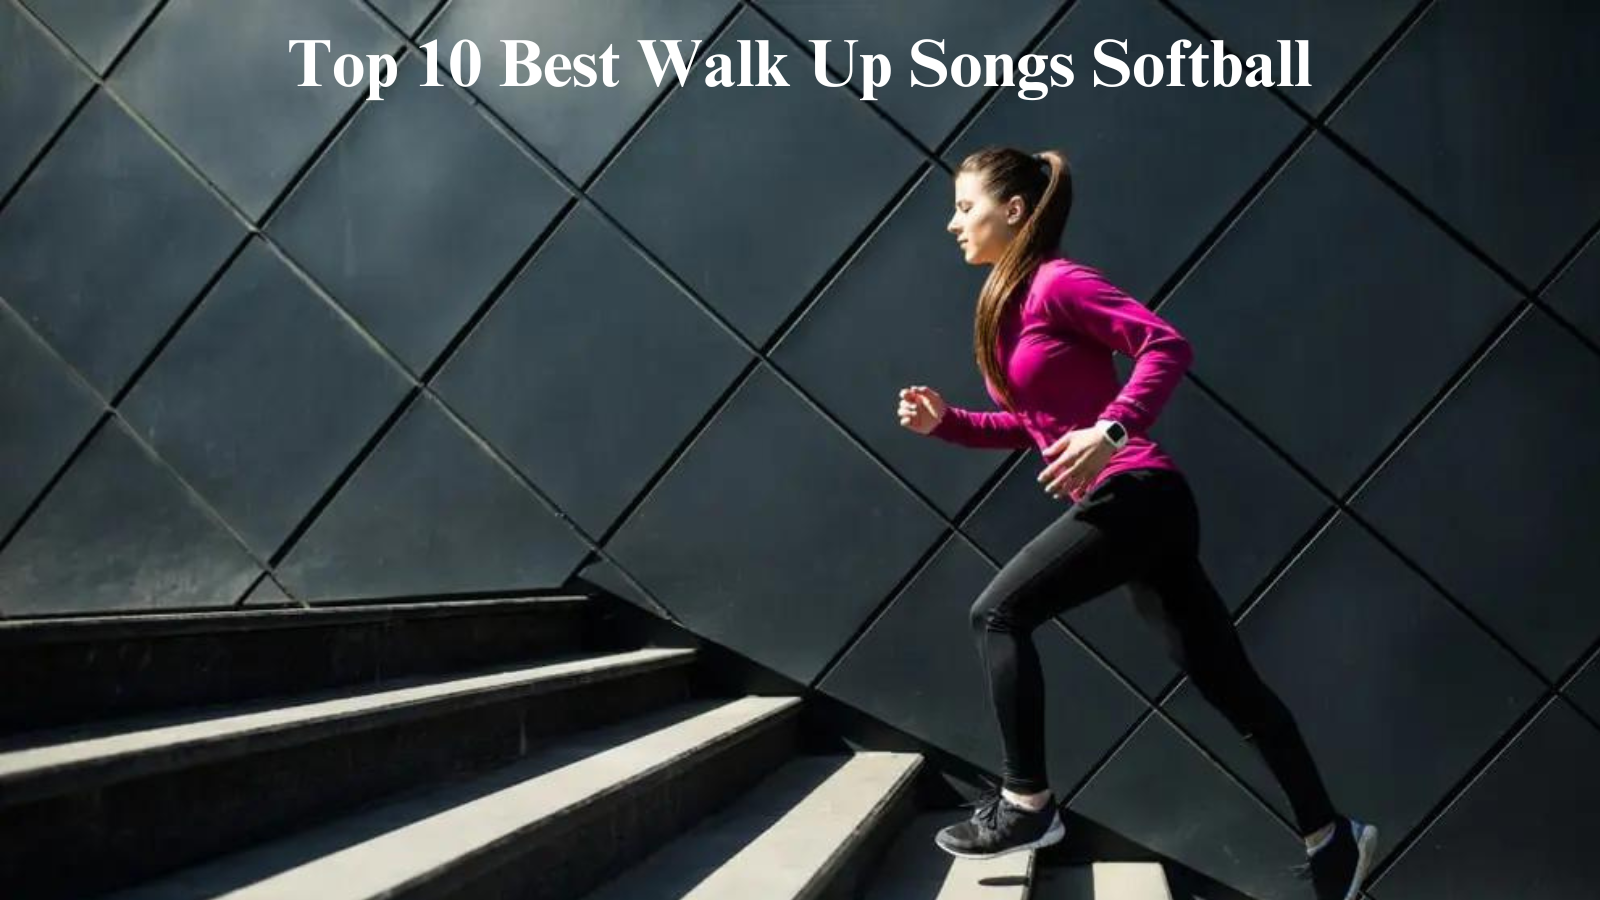 Top 10 Best Walk Up Songs Softball